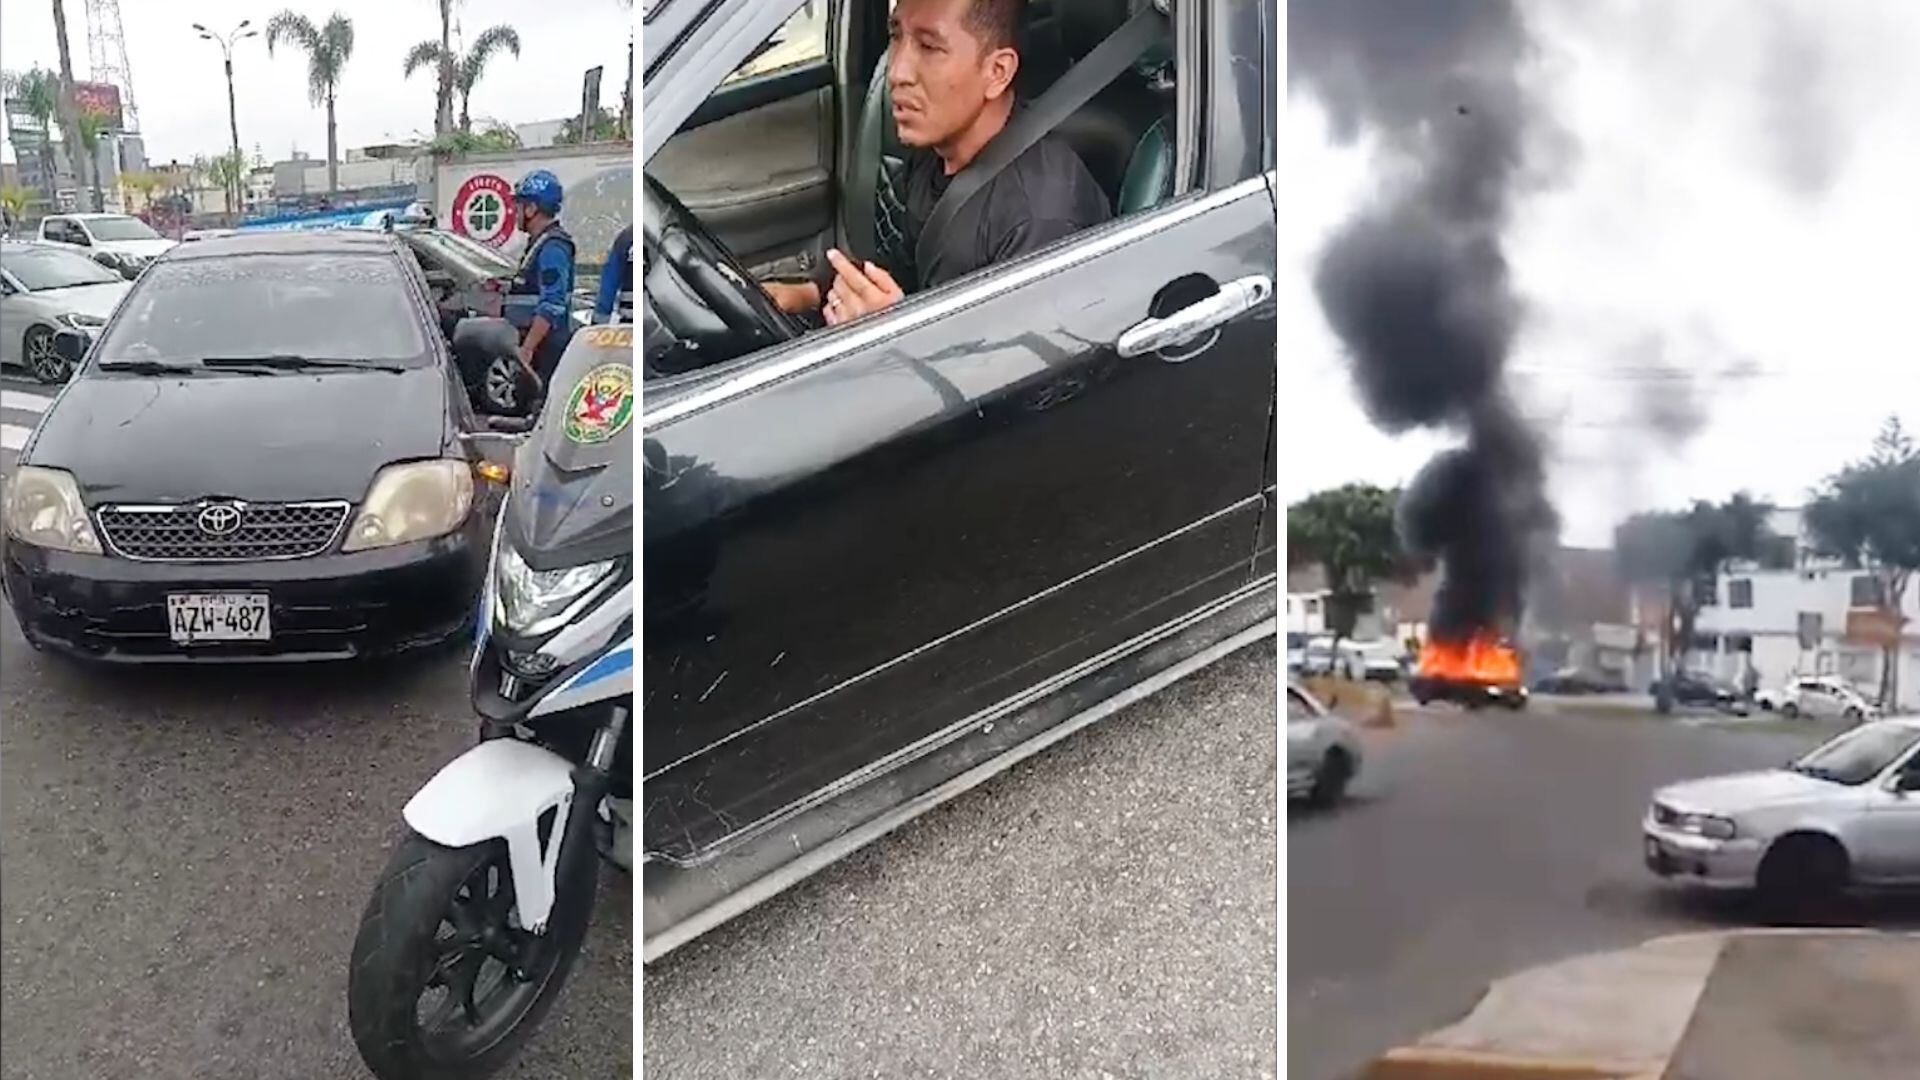 El conductor del vehículo intervenido mostró resistencia al internamiento de su automóvil y amenazó con incendiarlo. | Captura de video